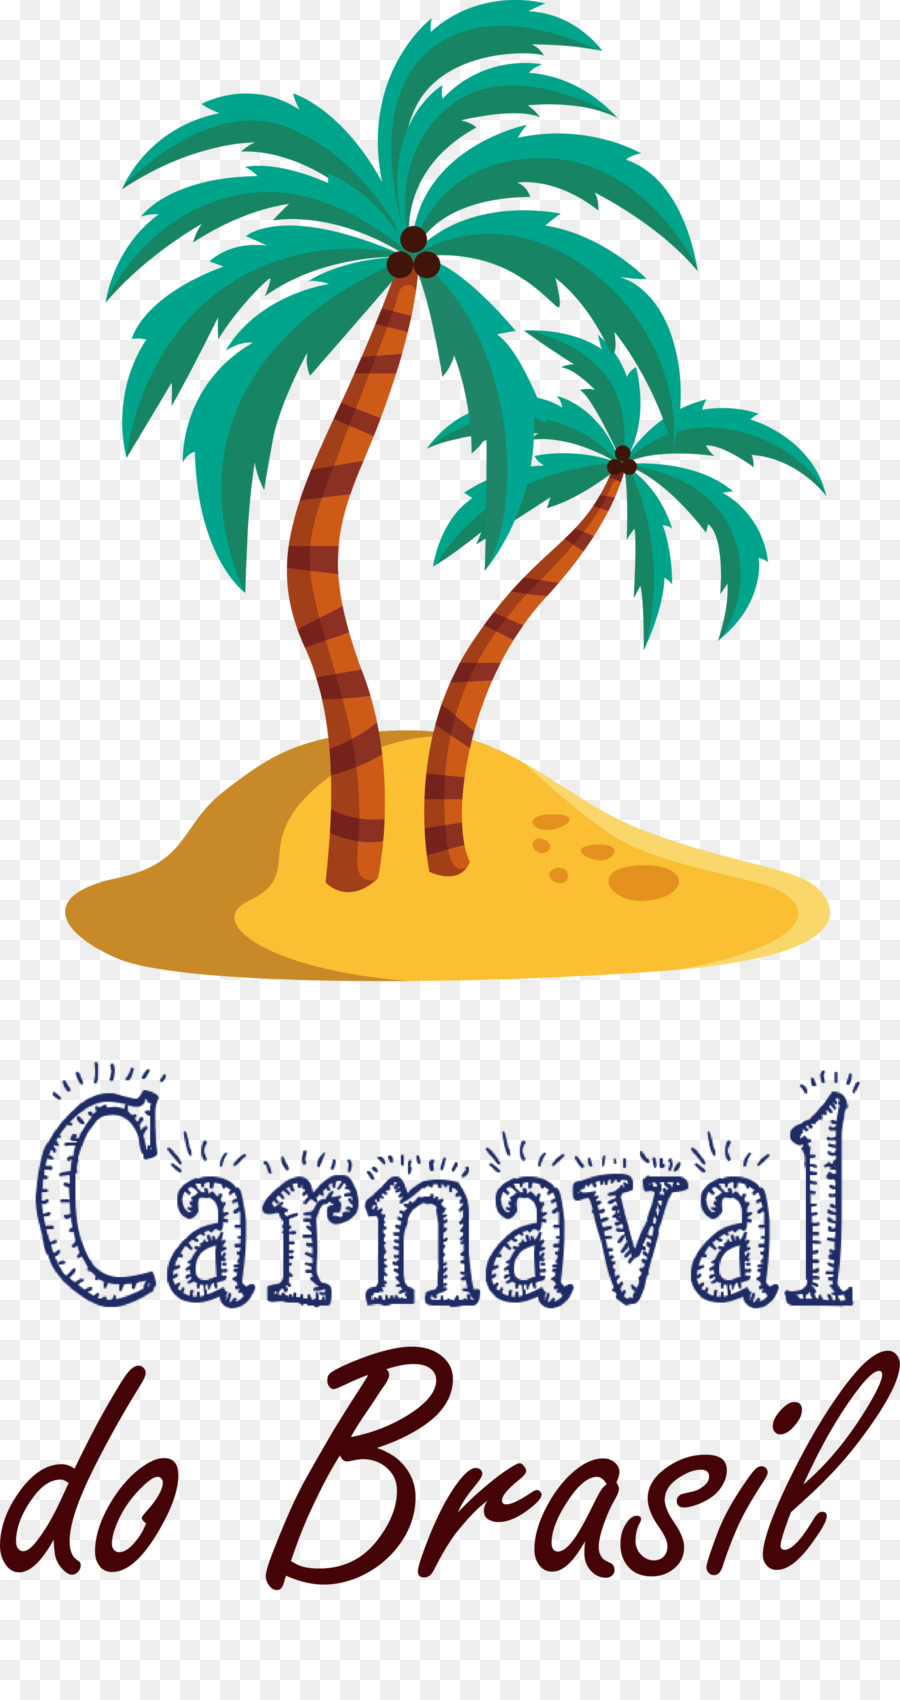 Carnevale brasiliano Carnaval do Brasil - 